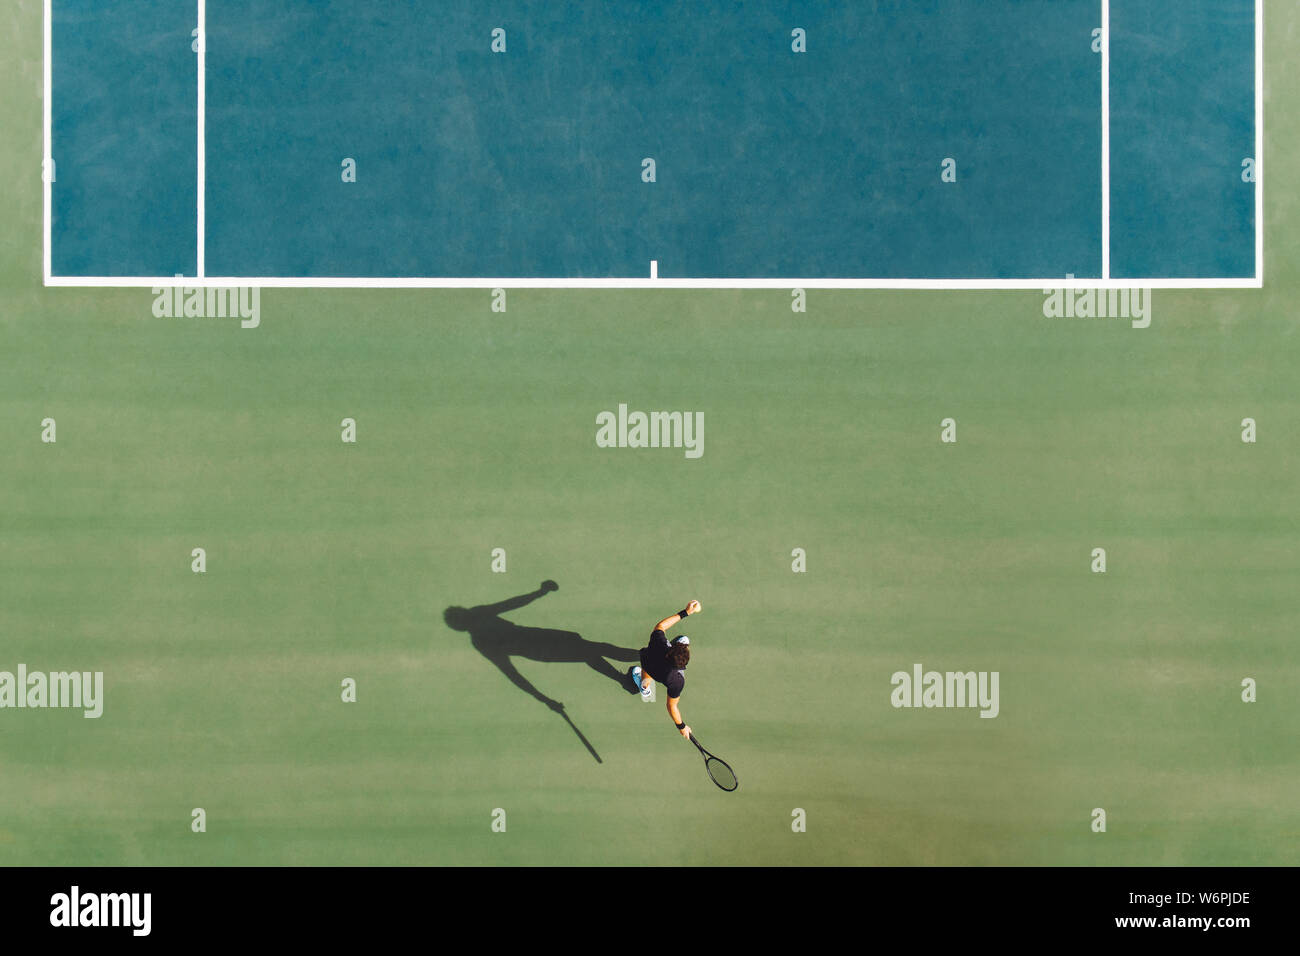 Vue aérienne de jeune joueur de tennis masculin jouant sur surface dure. Joueur de tennis professionnel frapper un coup droit sur la cour. Banque D'Images